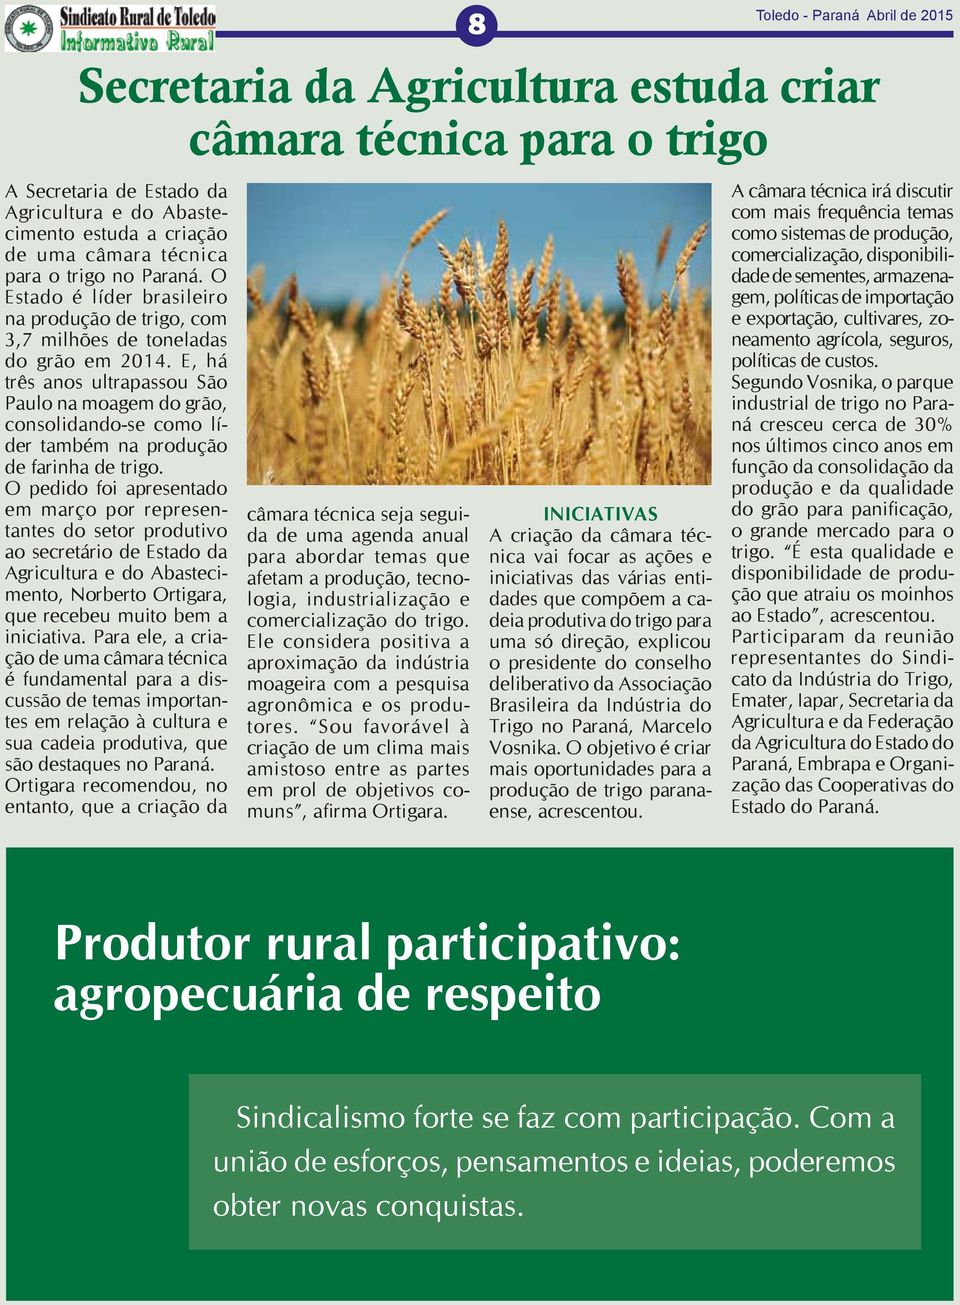 E, há três anos ultrapassou São Paulo na moagem do grão, consolidando-se como líder também na produção de farinha de trigo.